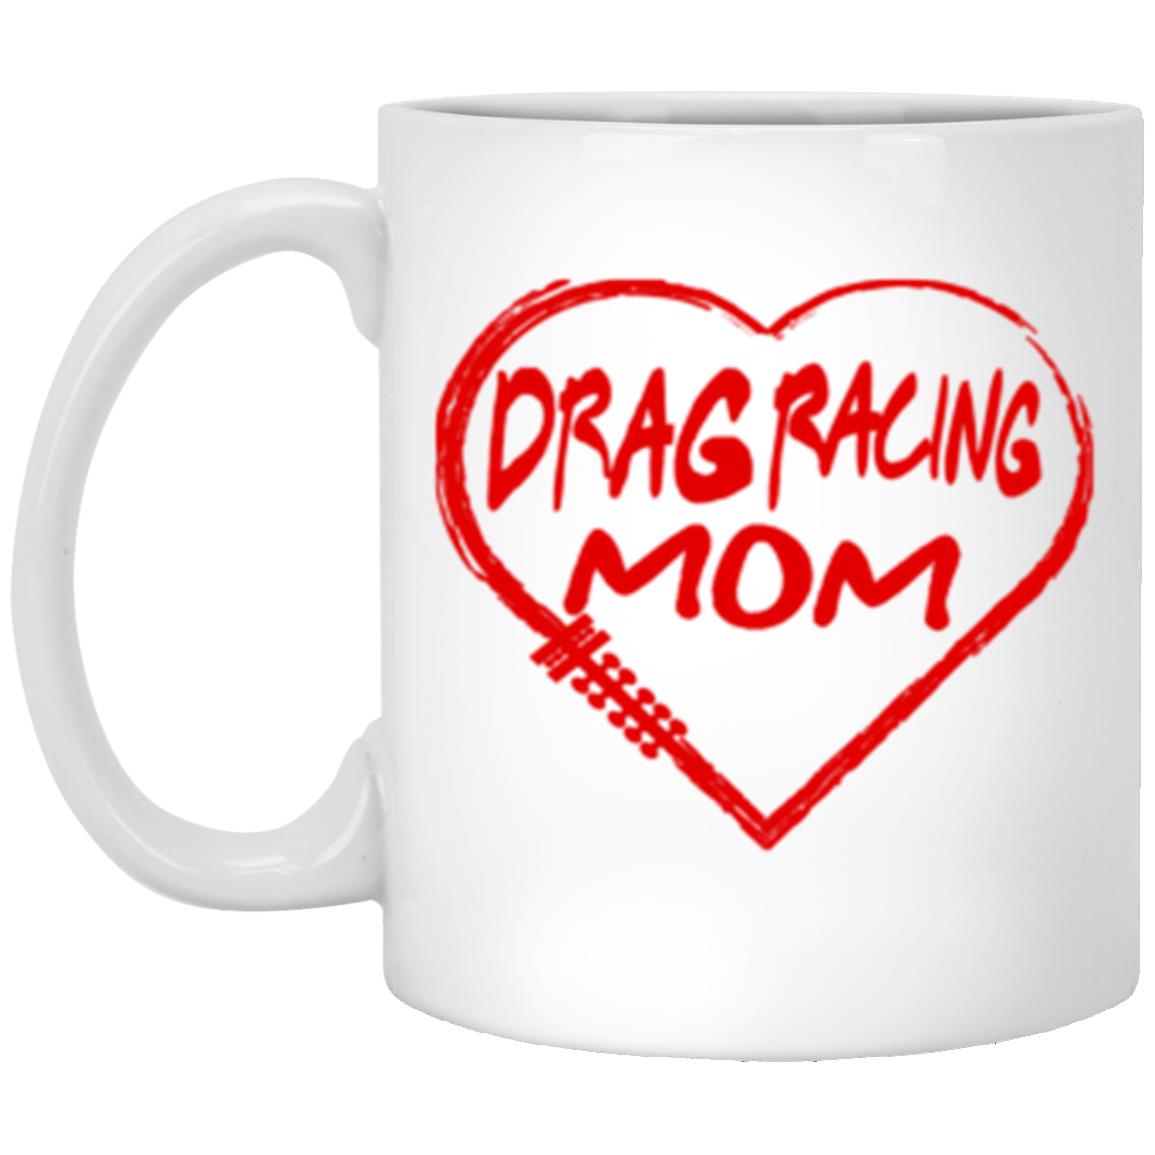 Drag Racing Mom Heart 11 oz. White Mug